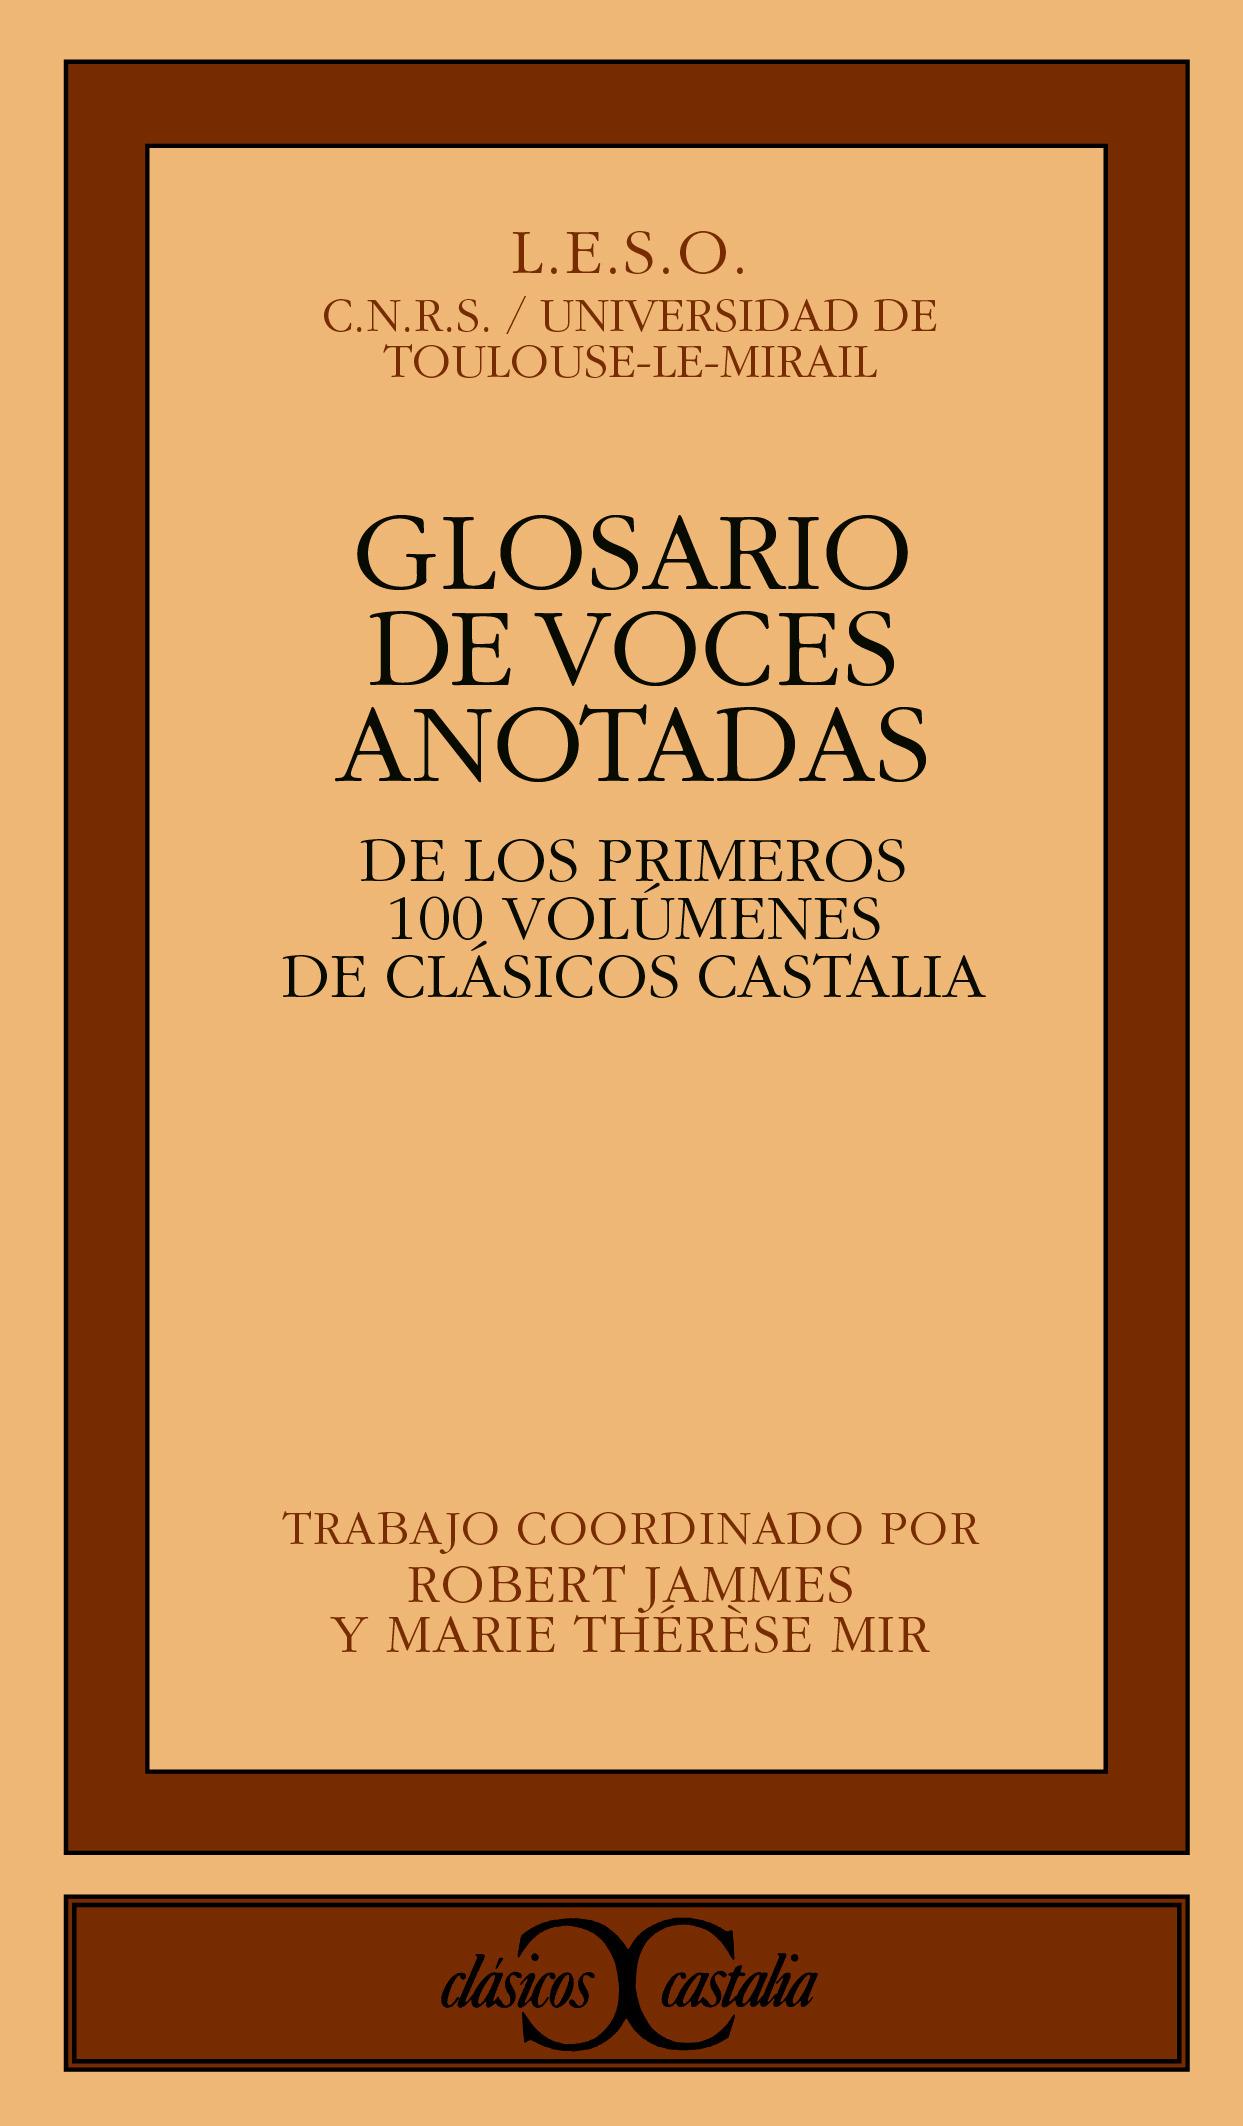 Foto Glosario de voces anotadas en los 100 primeros volúmenes de Clásicos Castalia . foto 758702